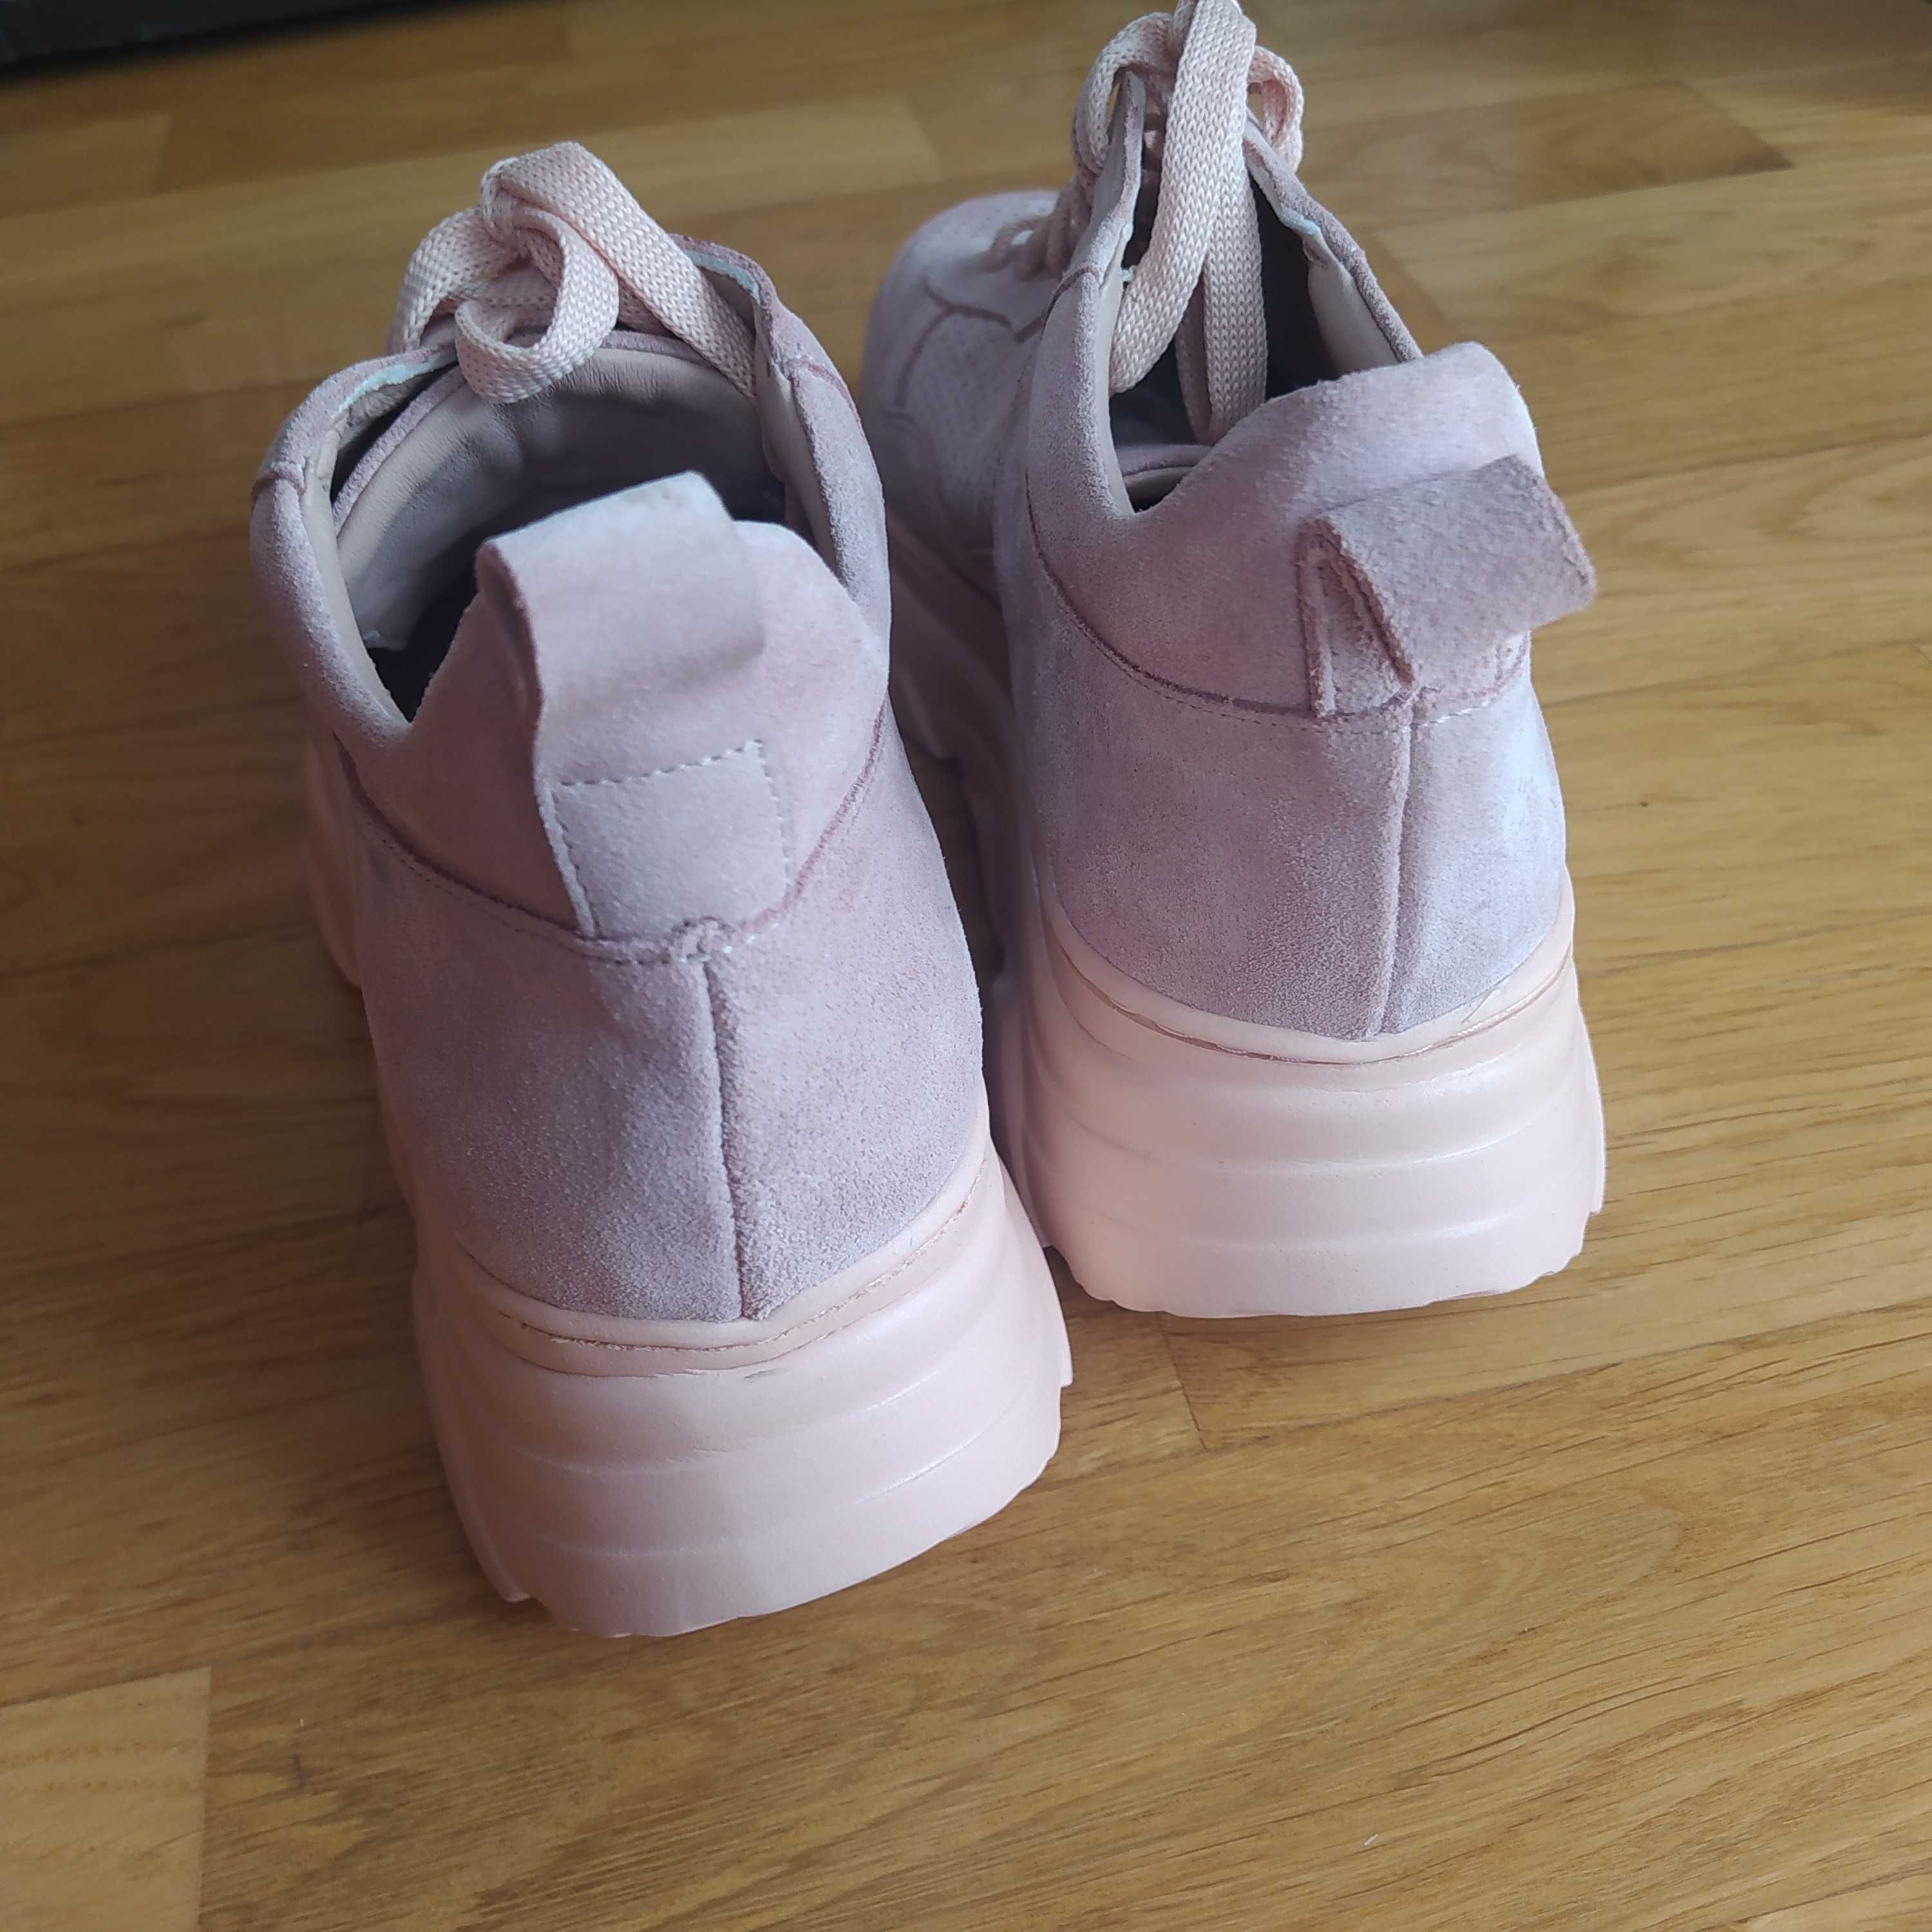 Buty sneakersy zamszowe różowe Venezia r. 37